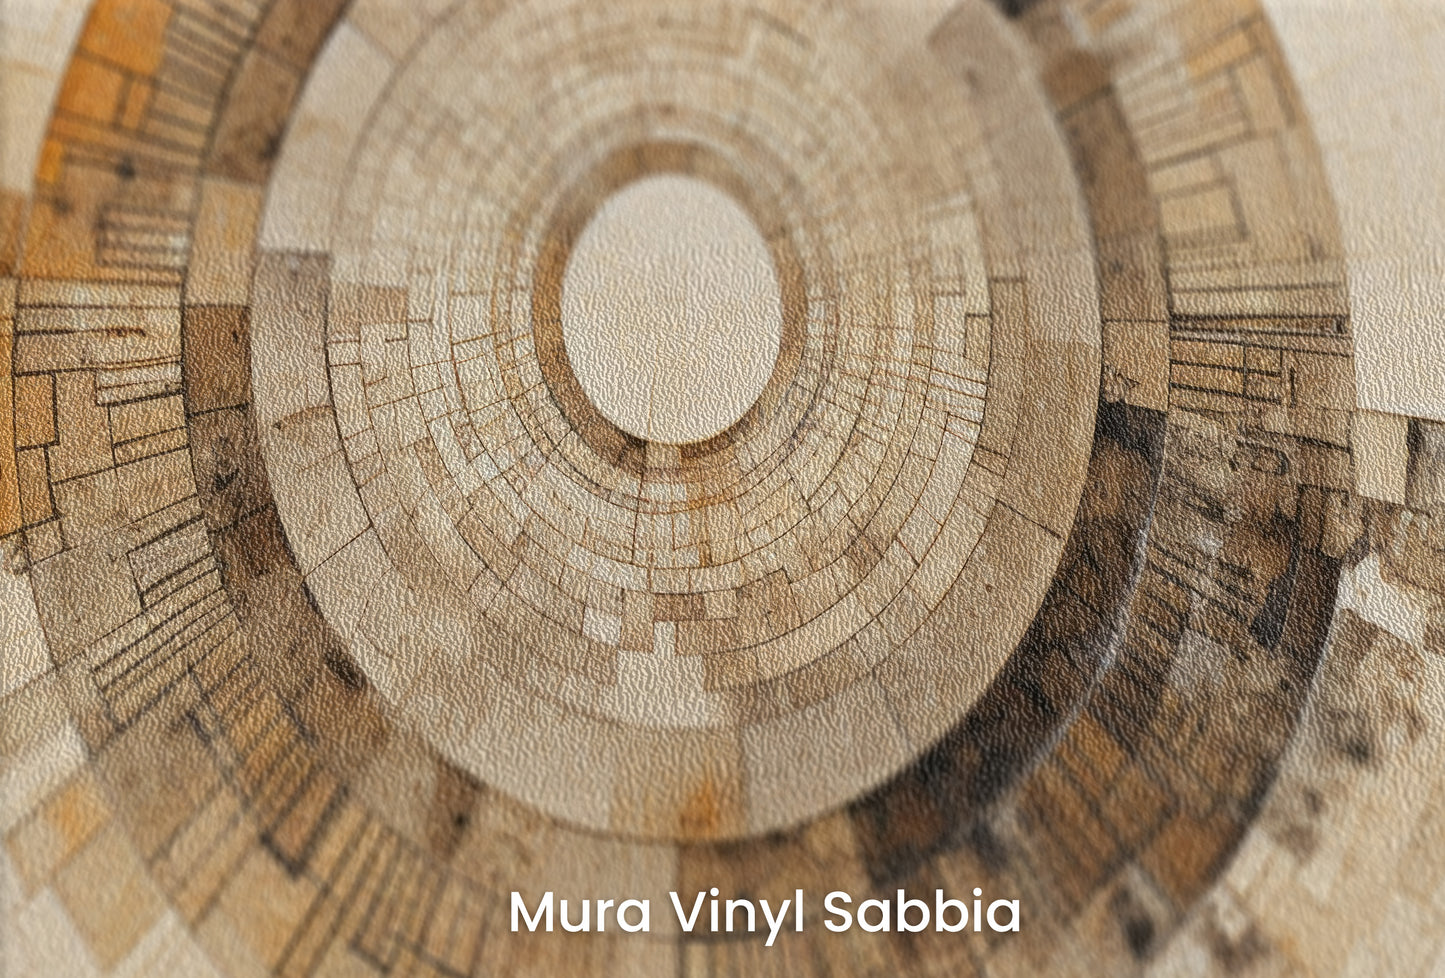 Zbliżenie na artystyczną fototapetę o nazwie SUNBURST MOSAIC na podłożu Mura Vinyl Sabbia struktura grubego ziarna piasku.